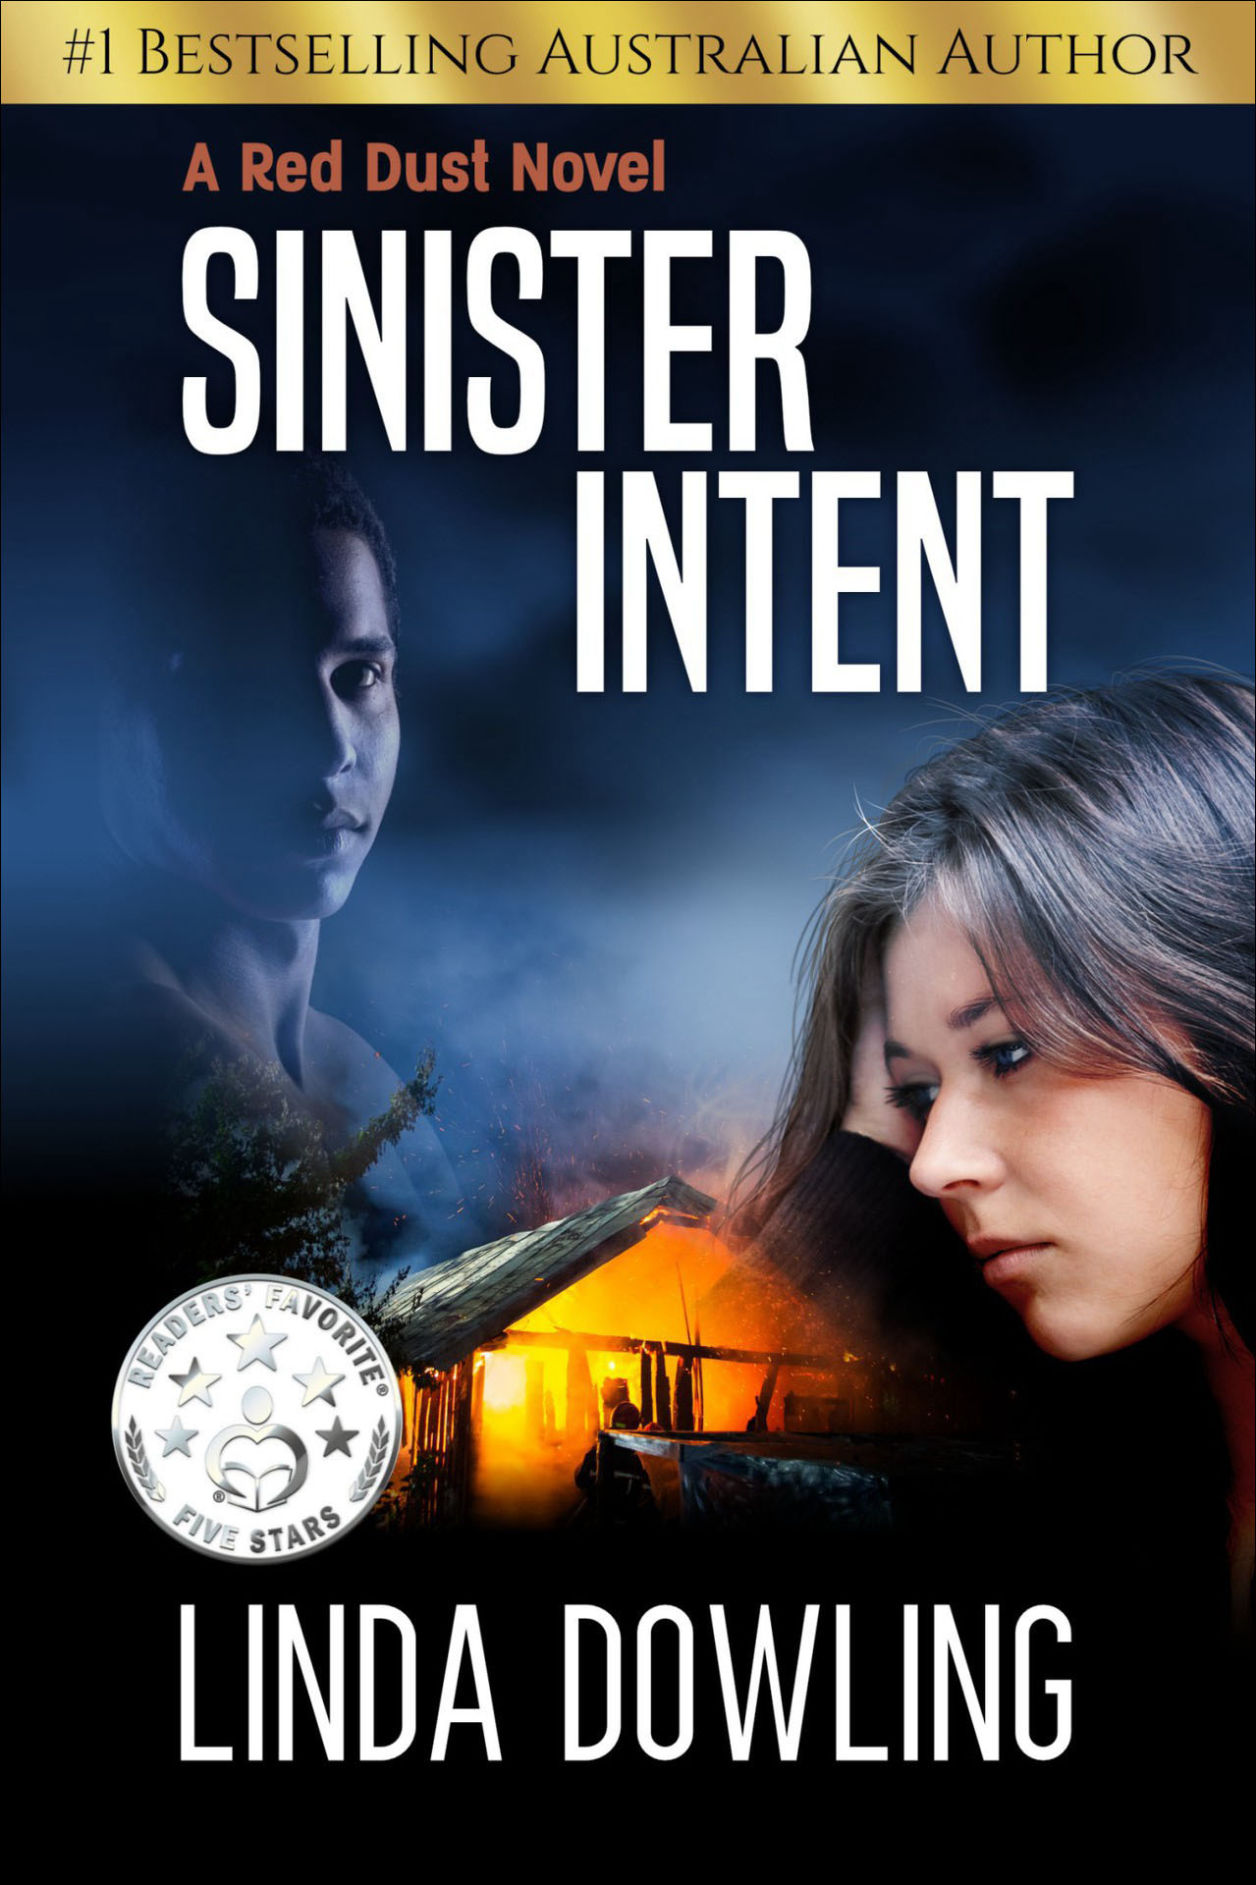 Linda Dowling's novel 'Sinister Intent'